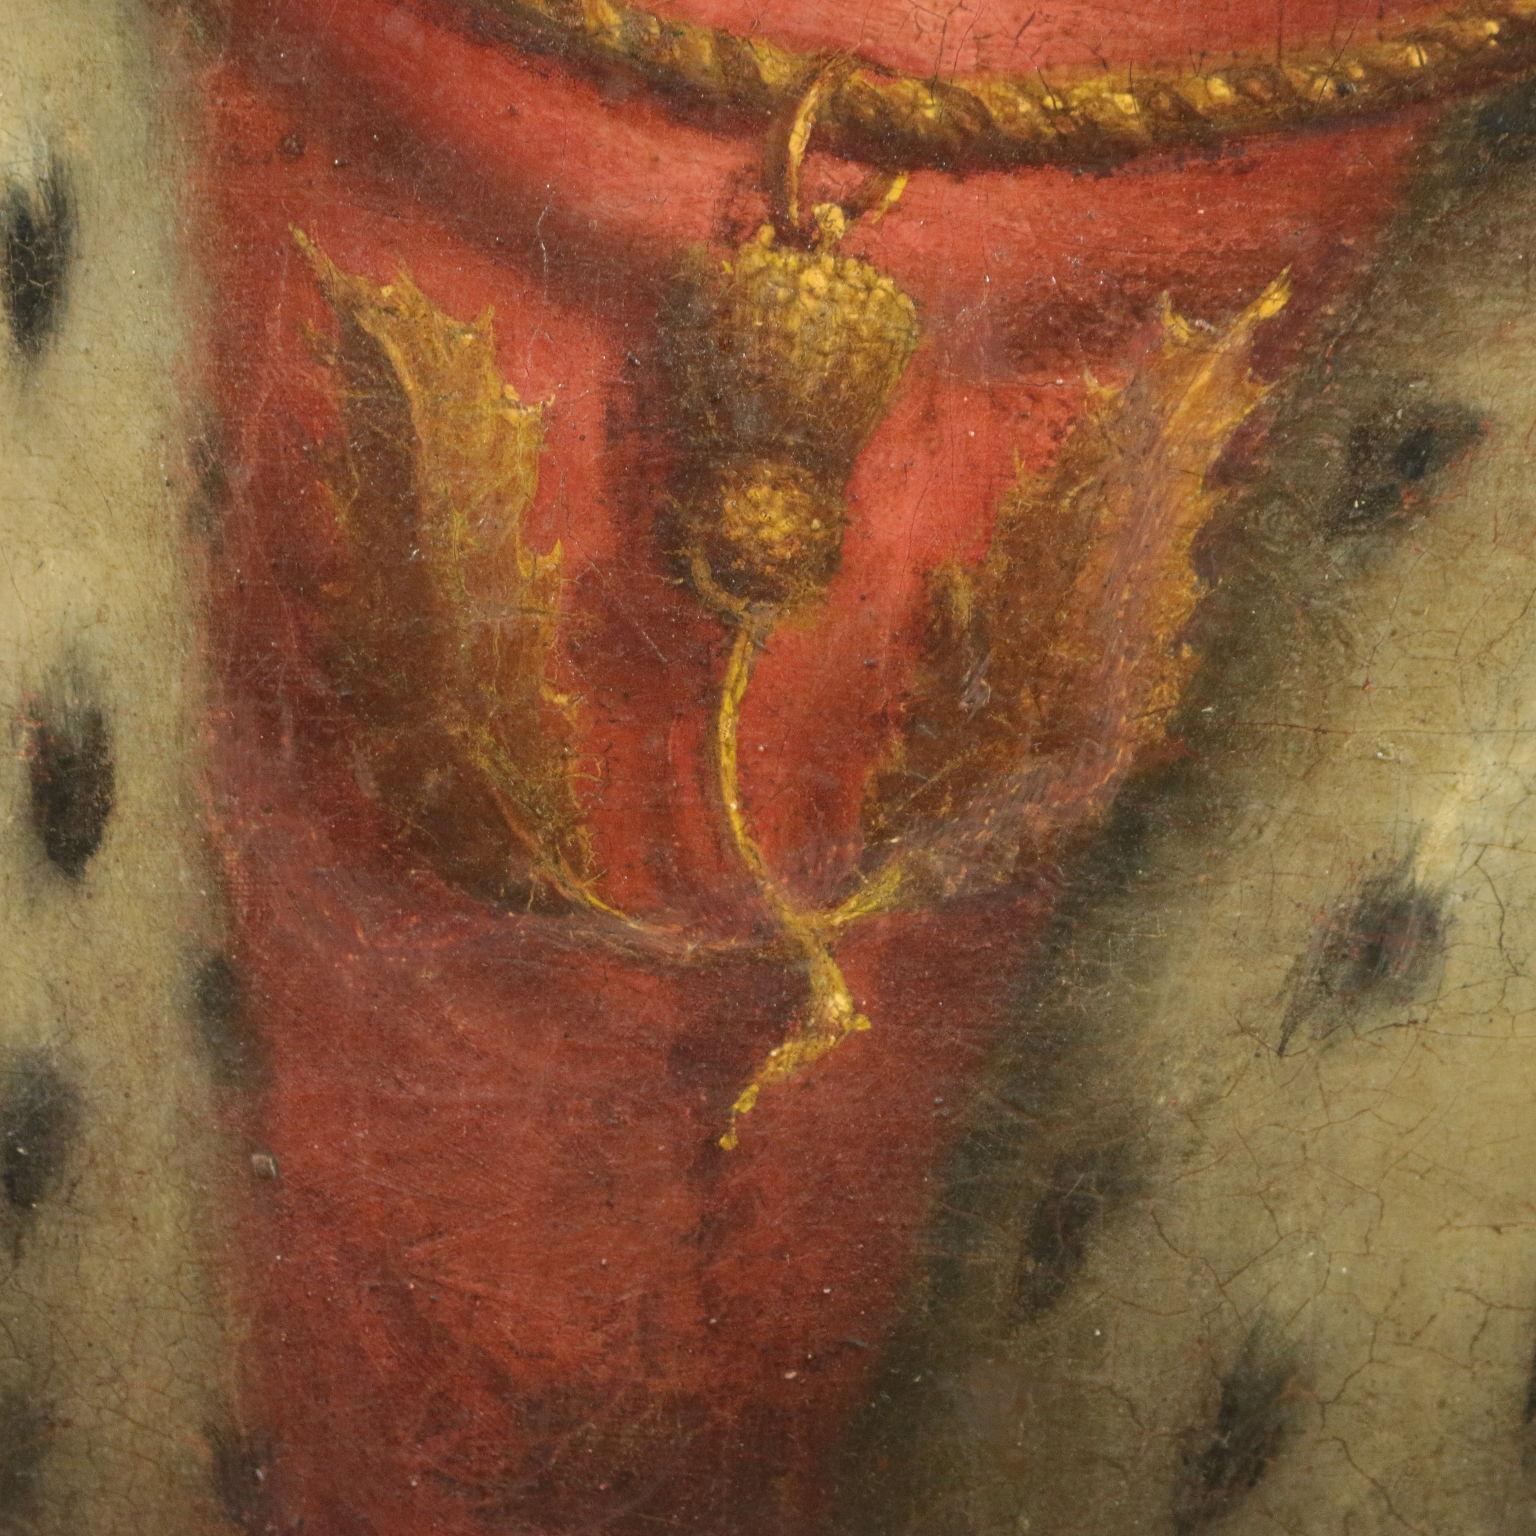 Öl auf Leinwand. Das intensive und hochwertige Gemälde stellt einen Monarchen des schottischen Königshauses dar.
Um das Porträt herum, in einem gemalten ovalen Rahmen, befinden sich einige Schriftzüge: oben links der Name Rober(t), unten links der